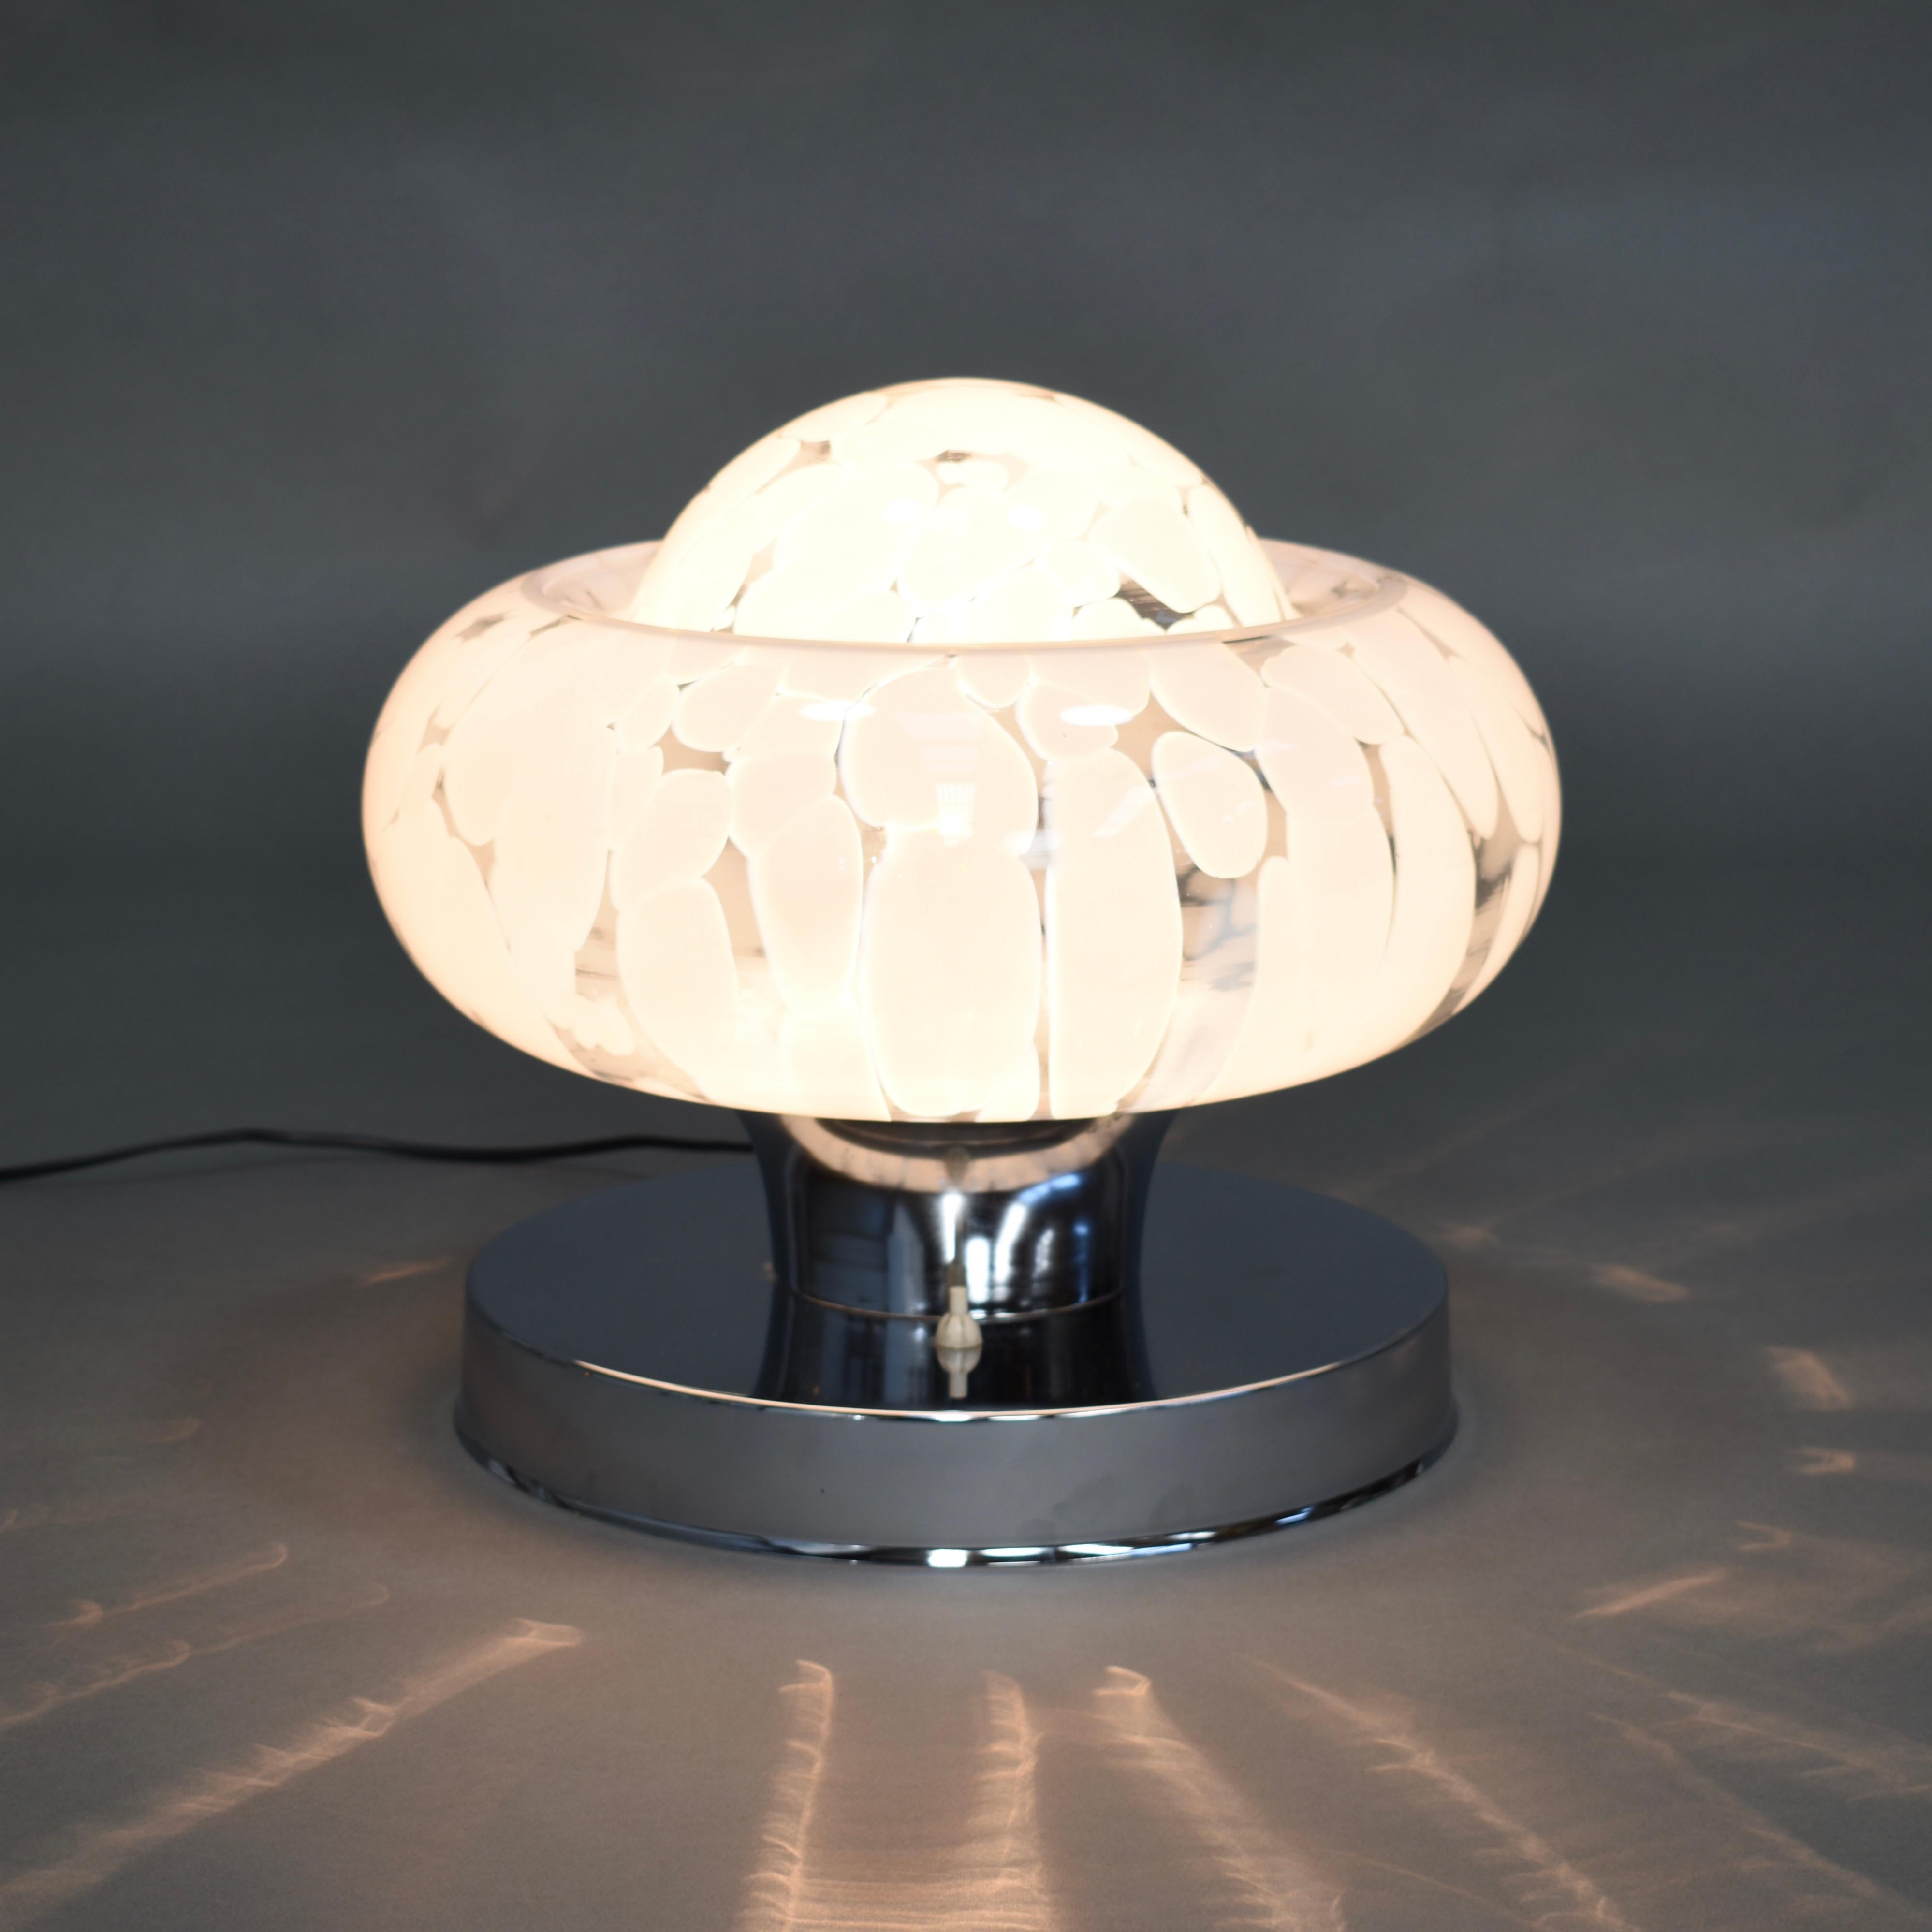 Lampe de table italienne Mazzega en verre de Murano, 1970

La lampe est composée de verre de Murano transparent et blanc nuageux et d'une base chromée.

Designer : attribué à Carlo Nason

Fabricant : attribué AV MAZZEGA

Pays :